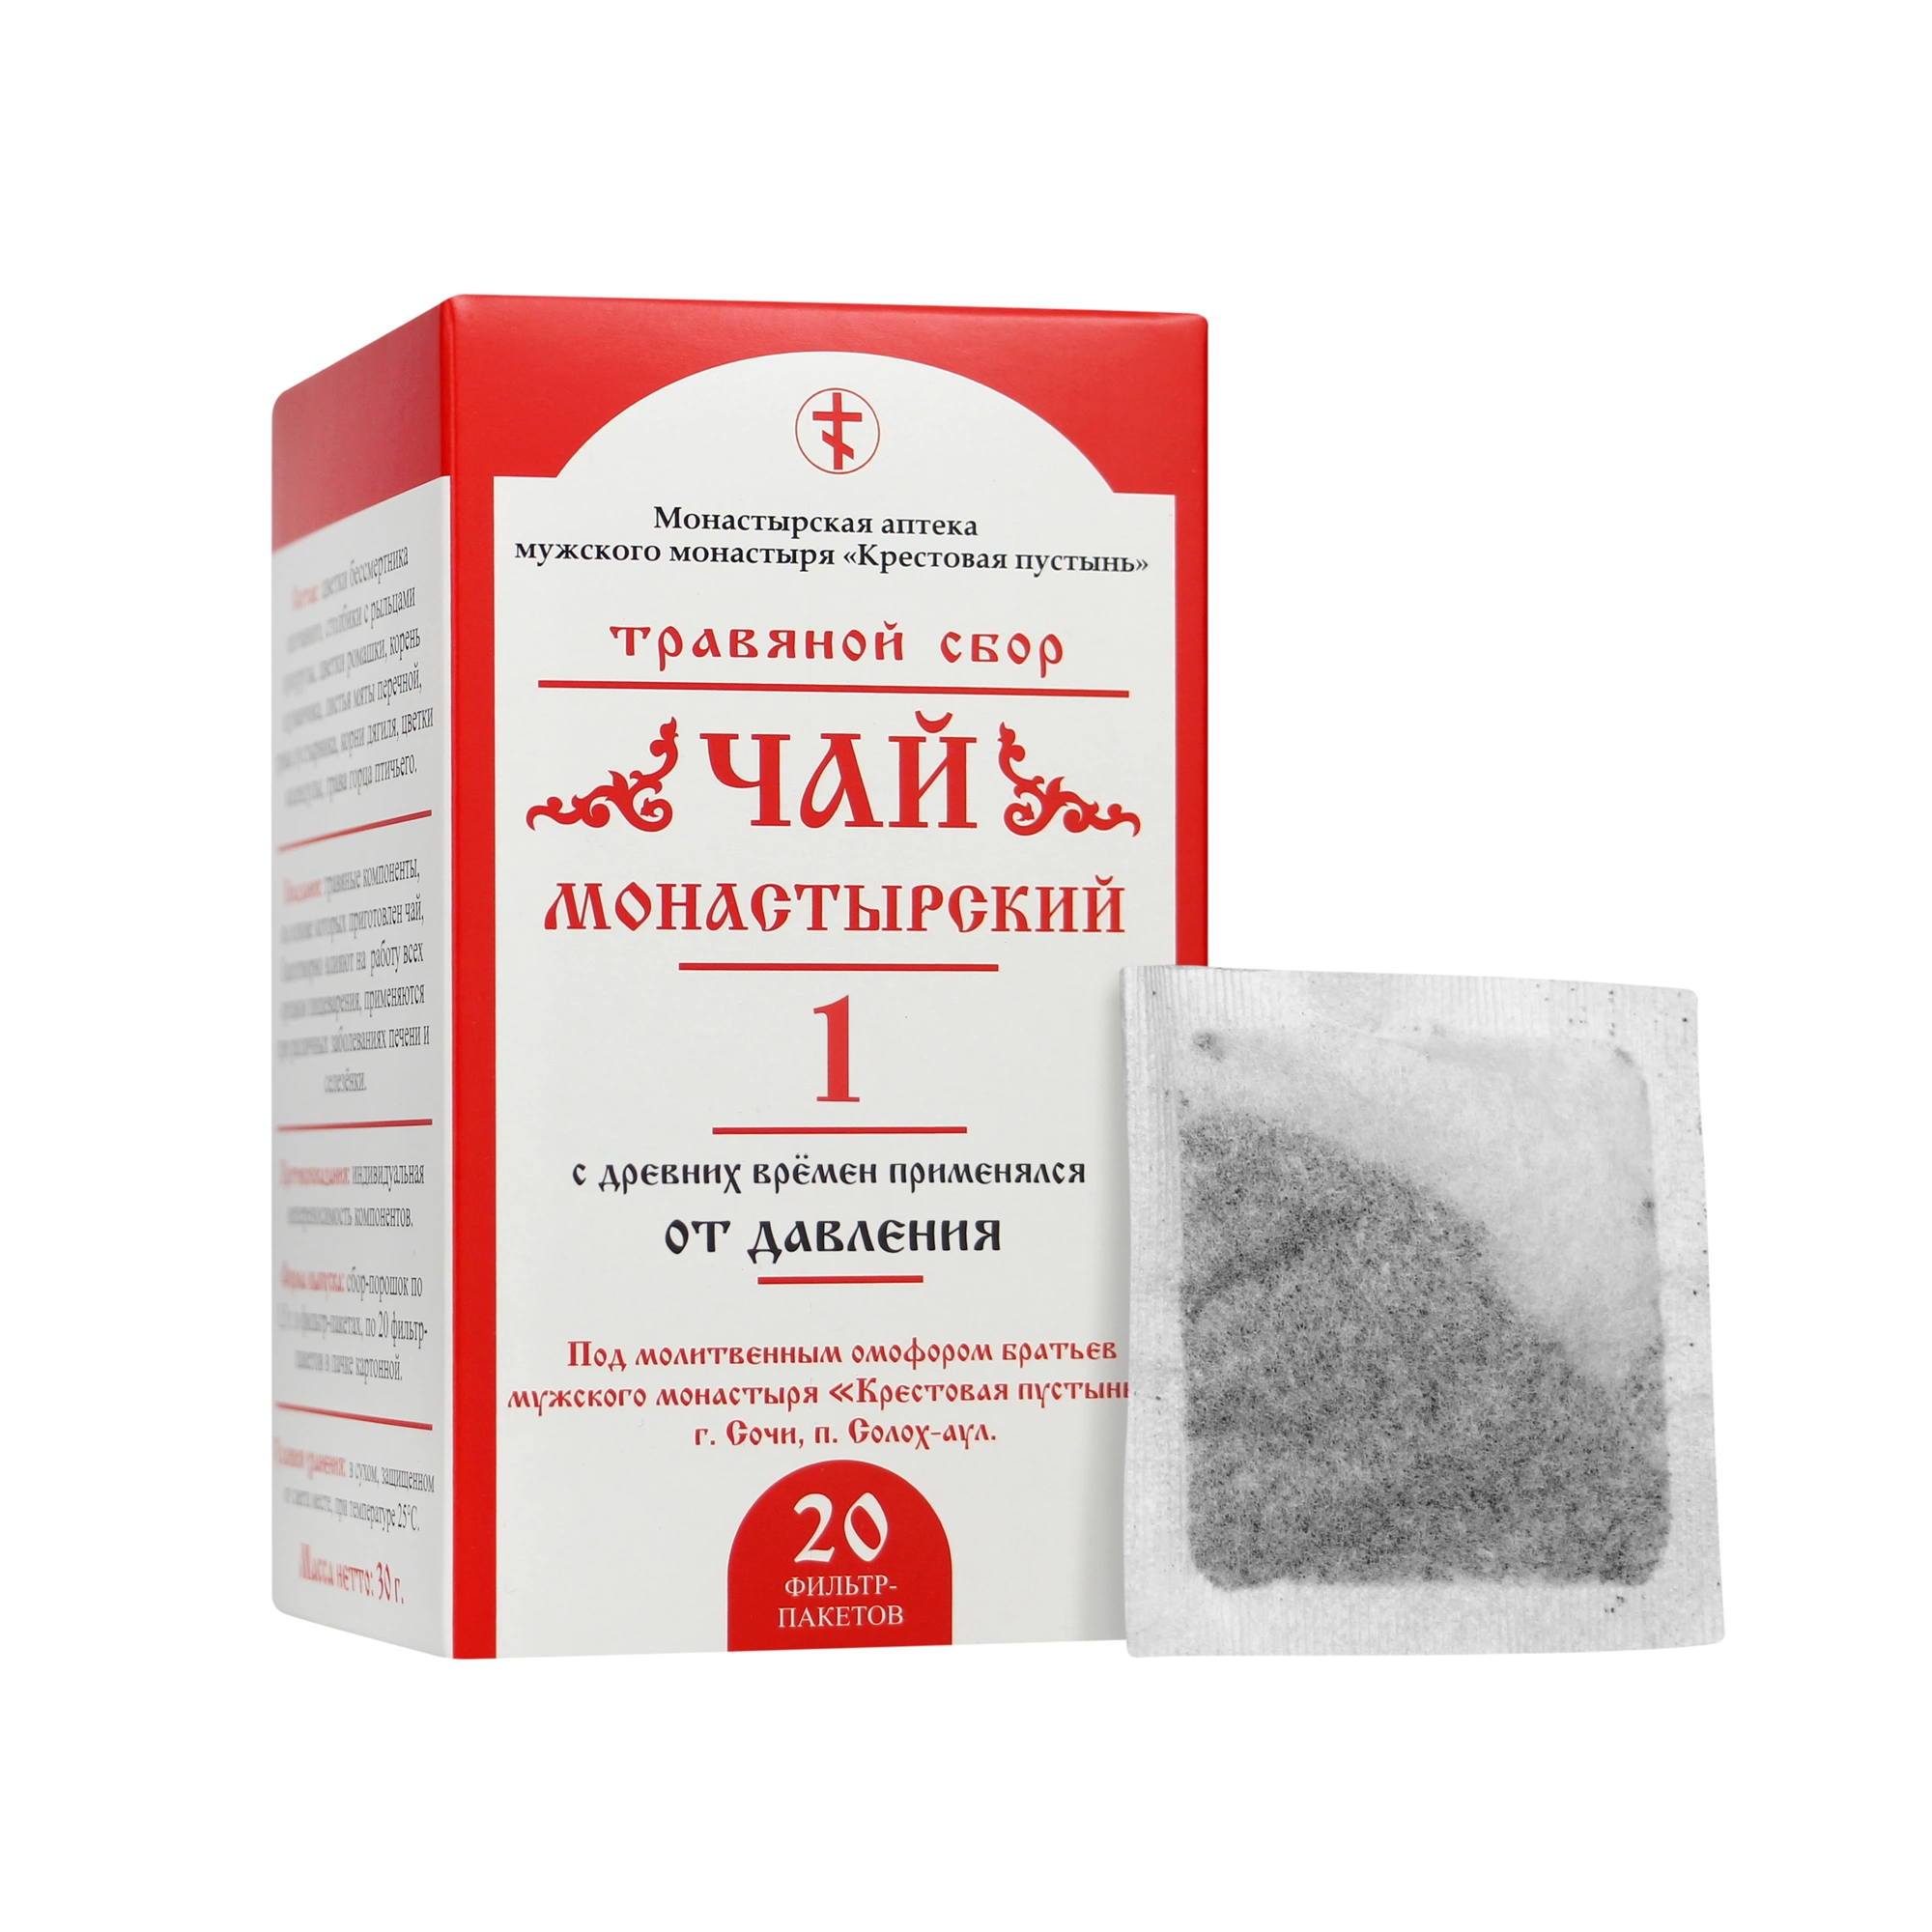 Чай Монастырский № 1, от давления, 20 пакетиков, 30г, "Солох-Аул"